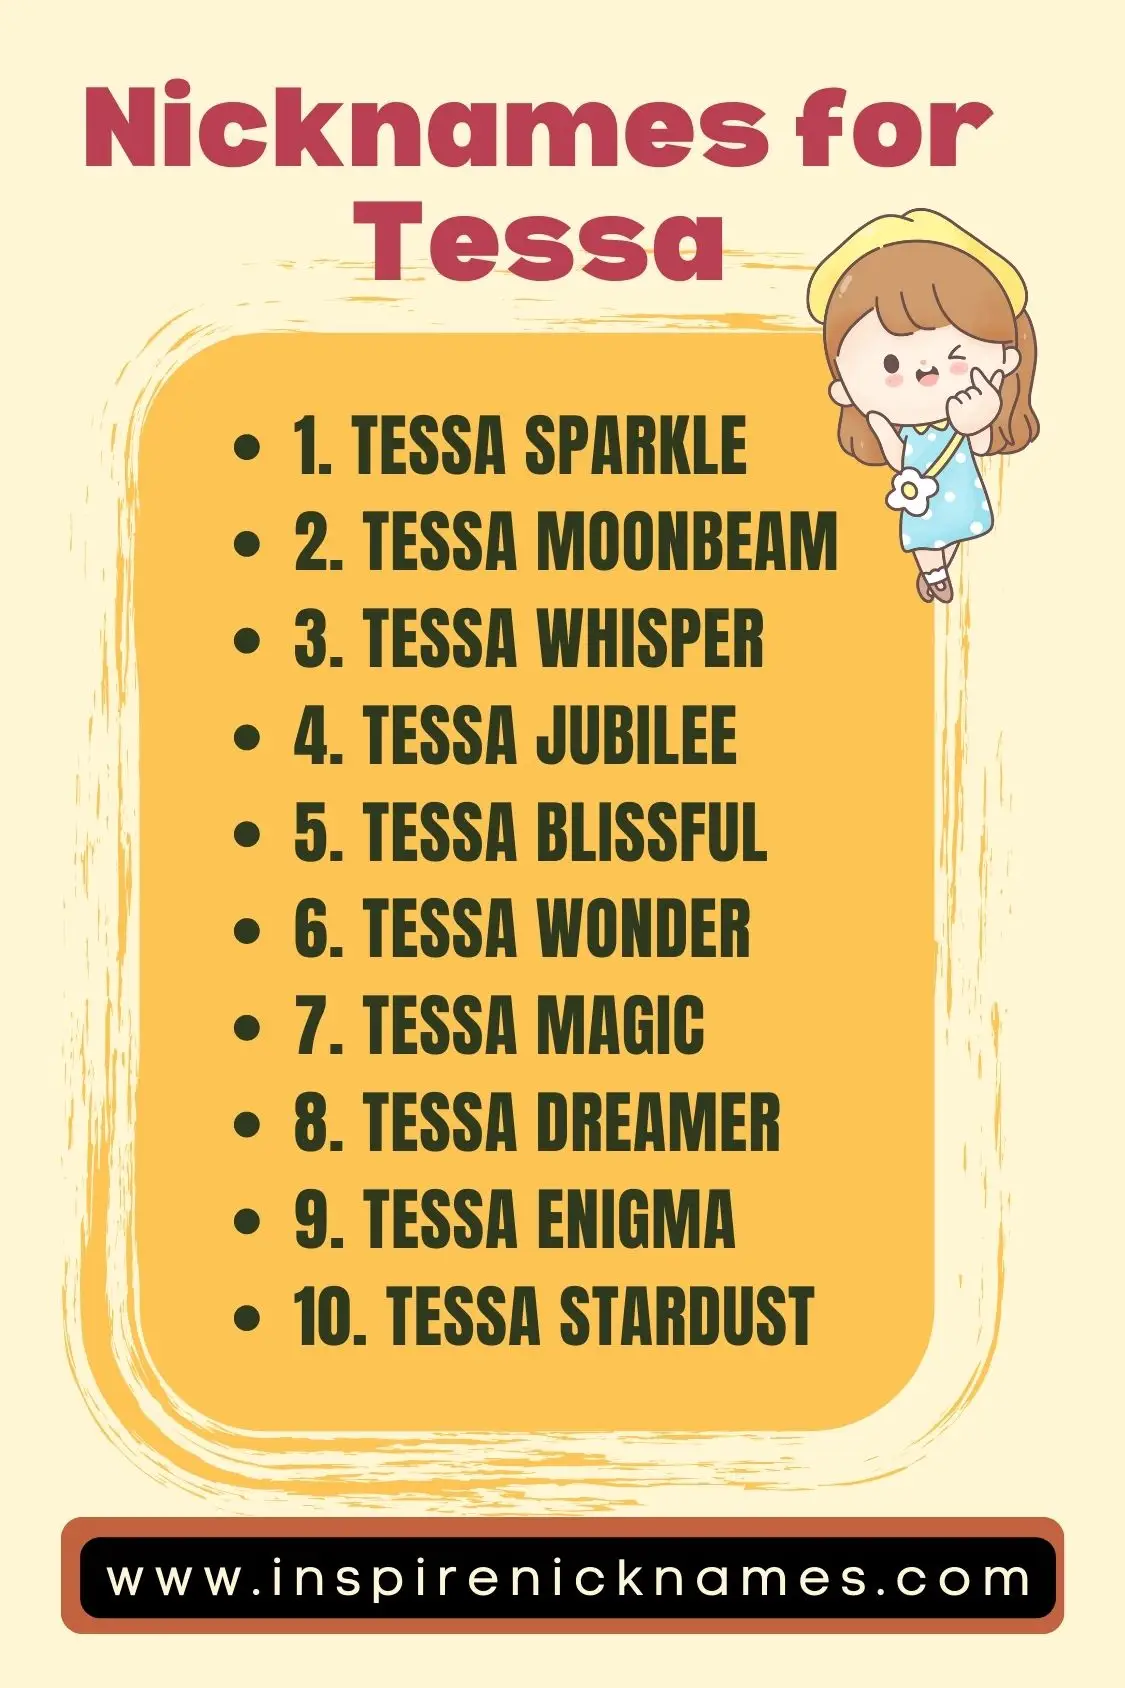 nicknames for tessa list ideas